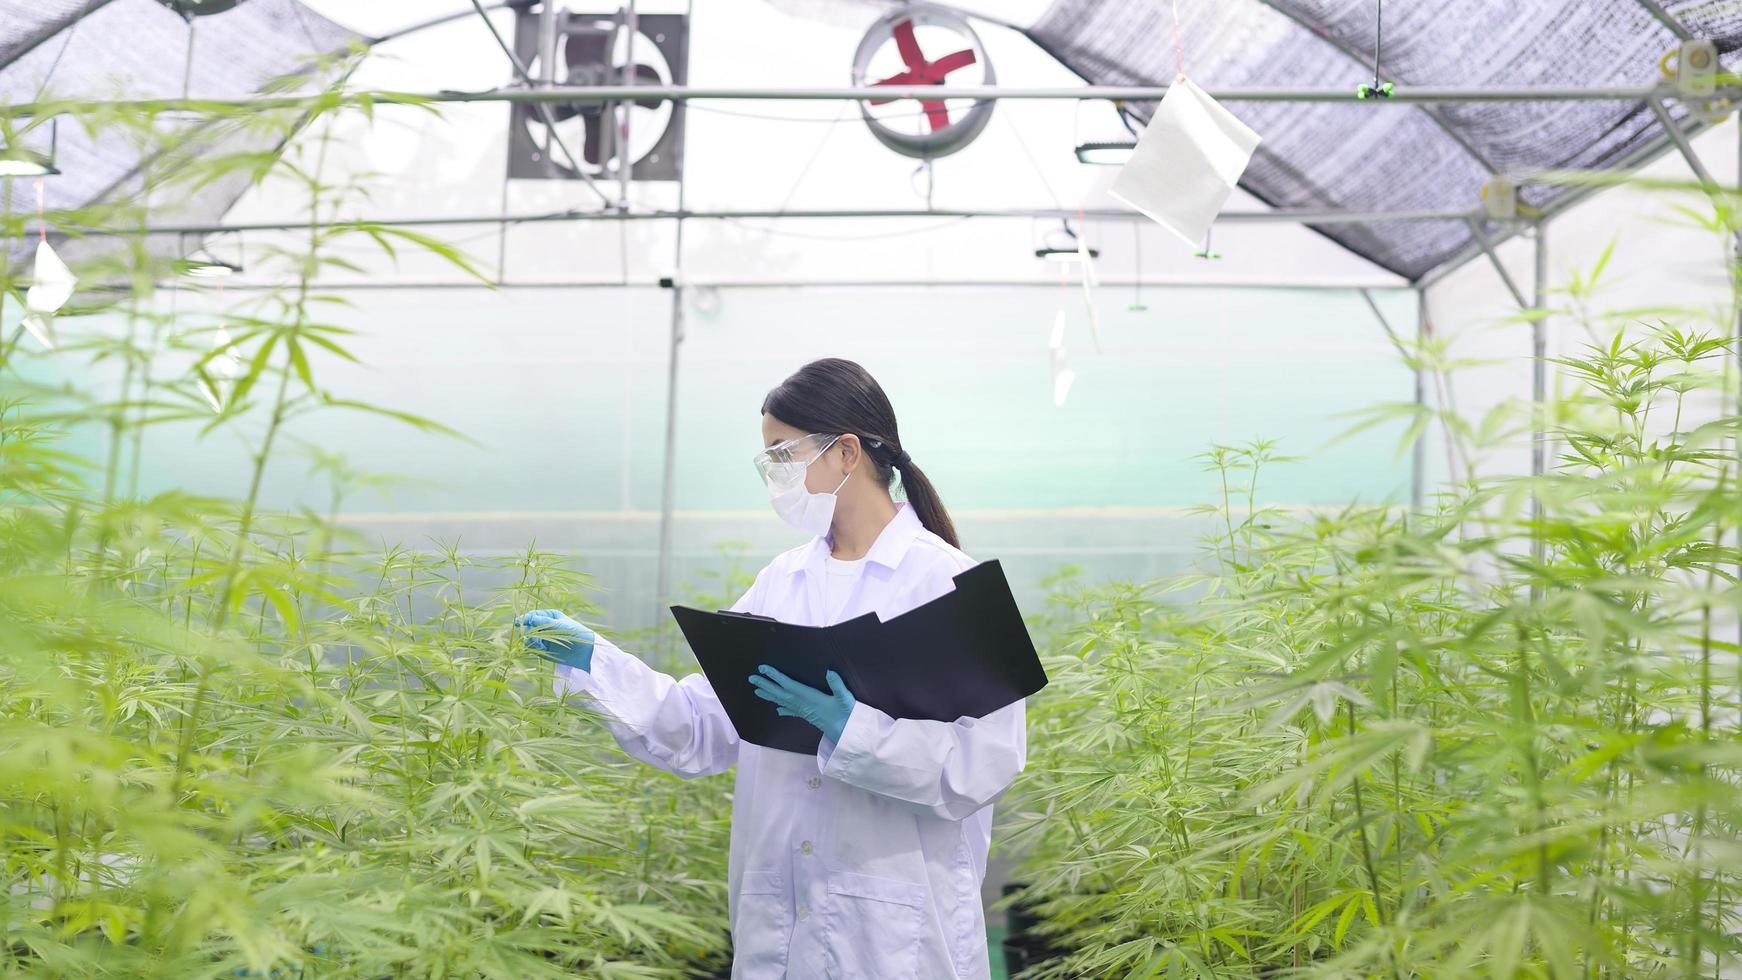 concept van cannabisplantage voor medisch, een wetenschapper verzamelt gegevens over cannabis sativa indoor farm foto